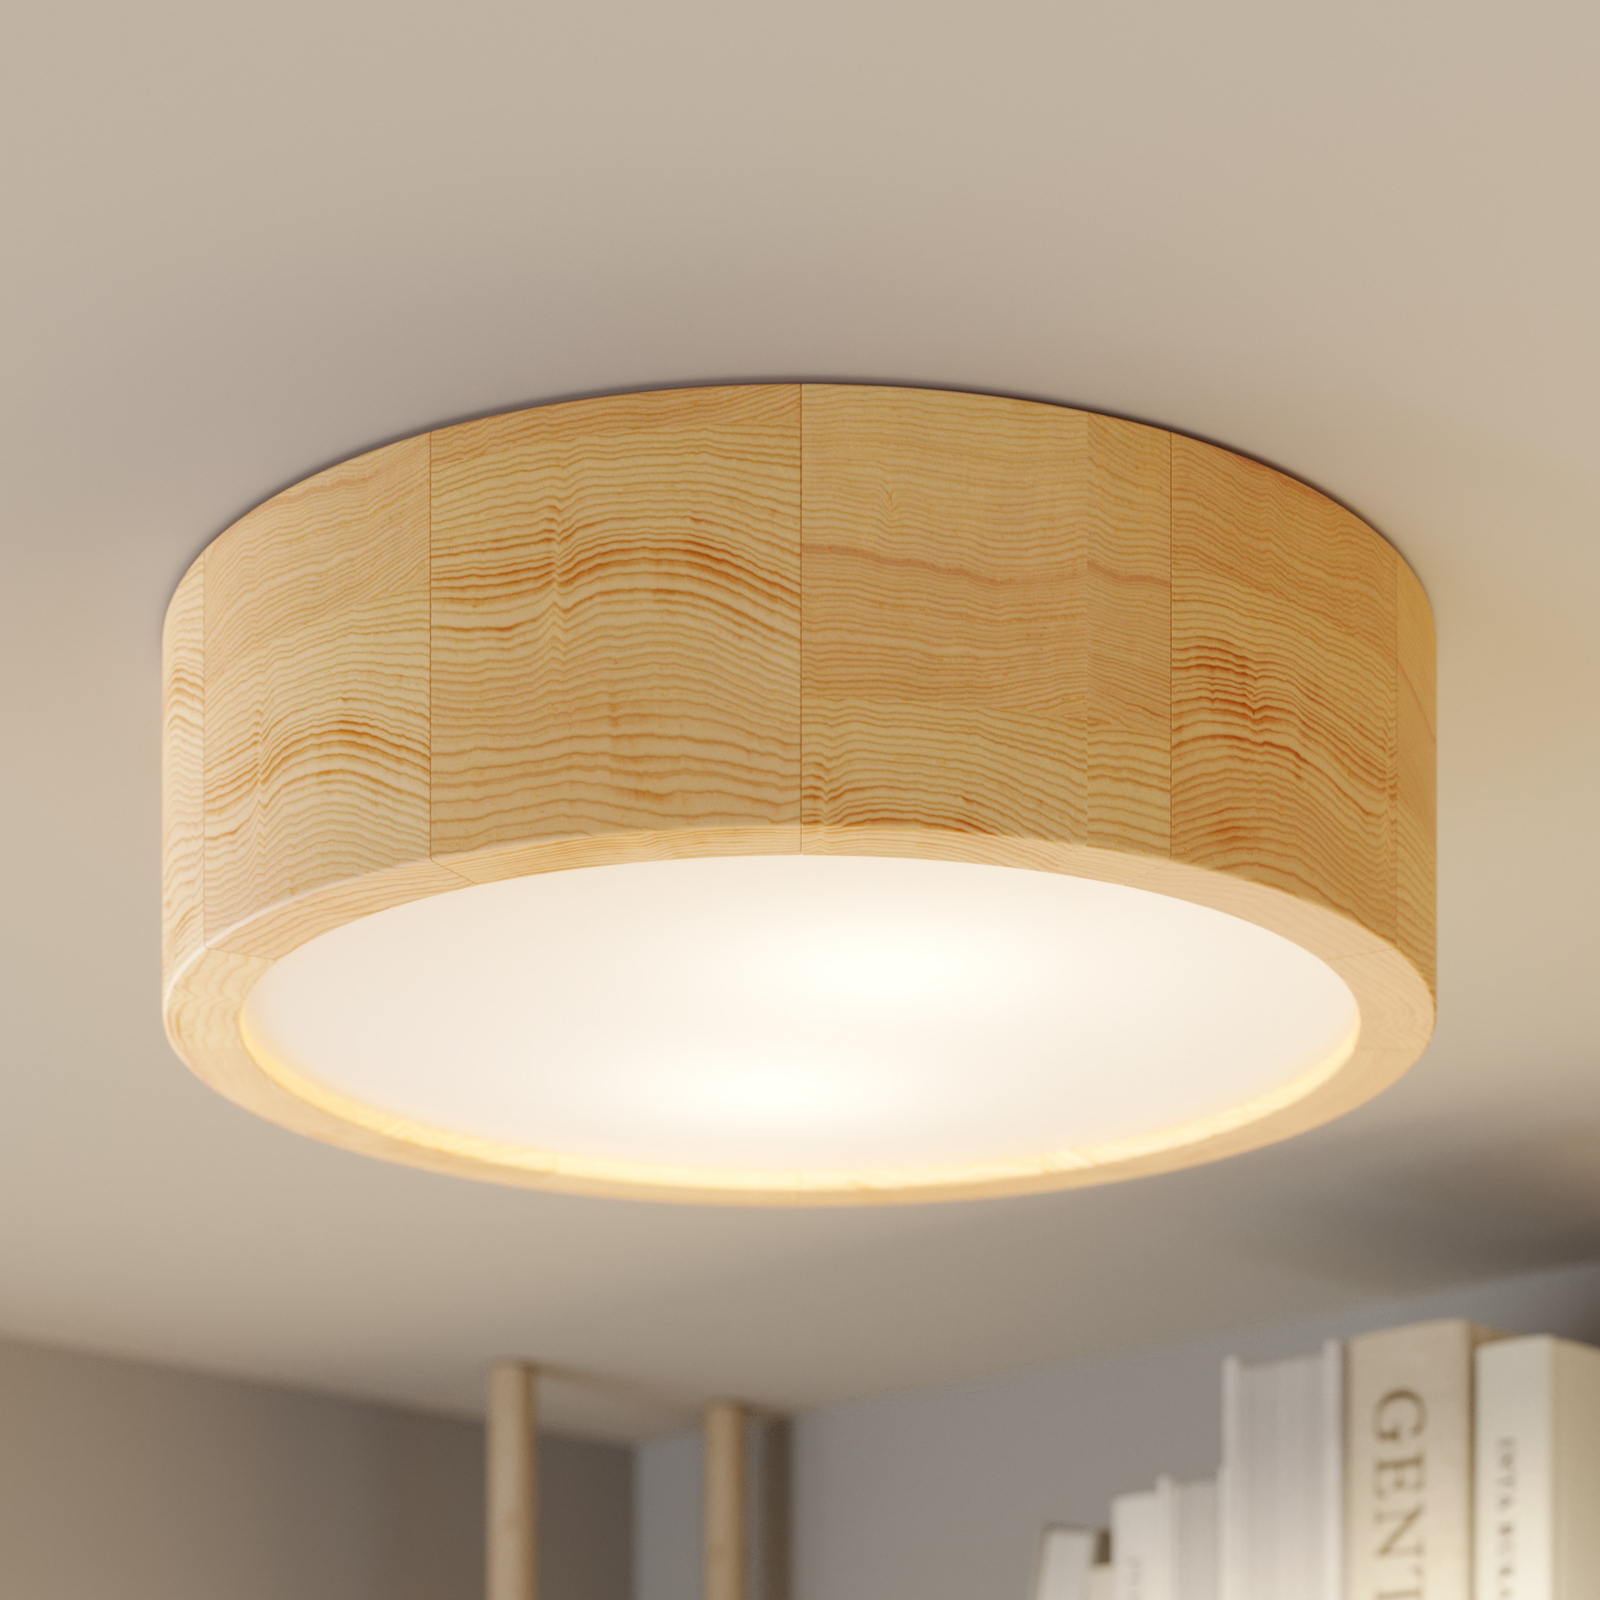 Lampa sufitowa Cleo z drewna z dyfuzorem, Ø 27,5cm